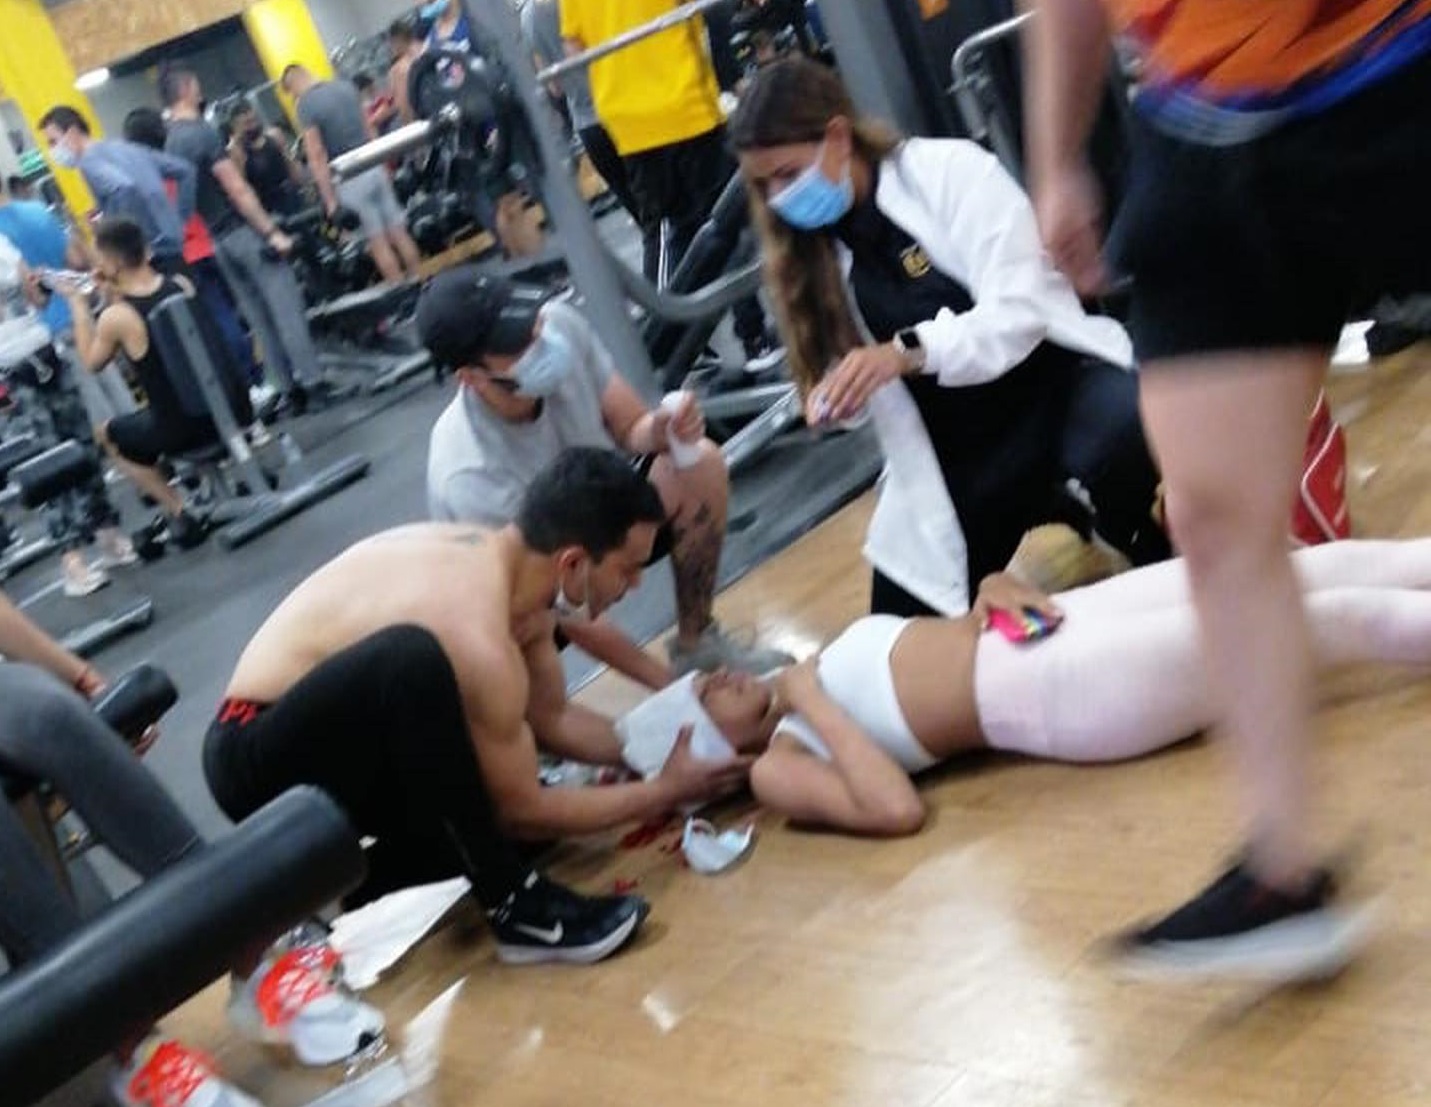 Hombre golpea a una joven con su celular en un gimnasio de Colombia (+Video)